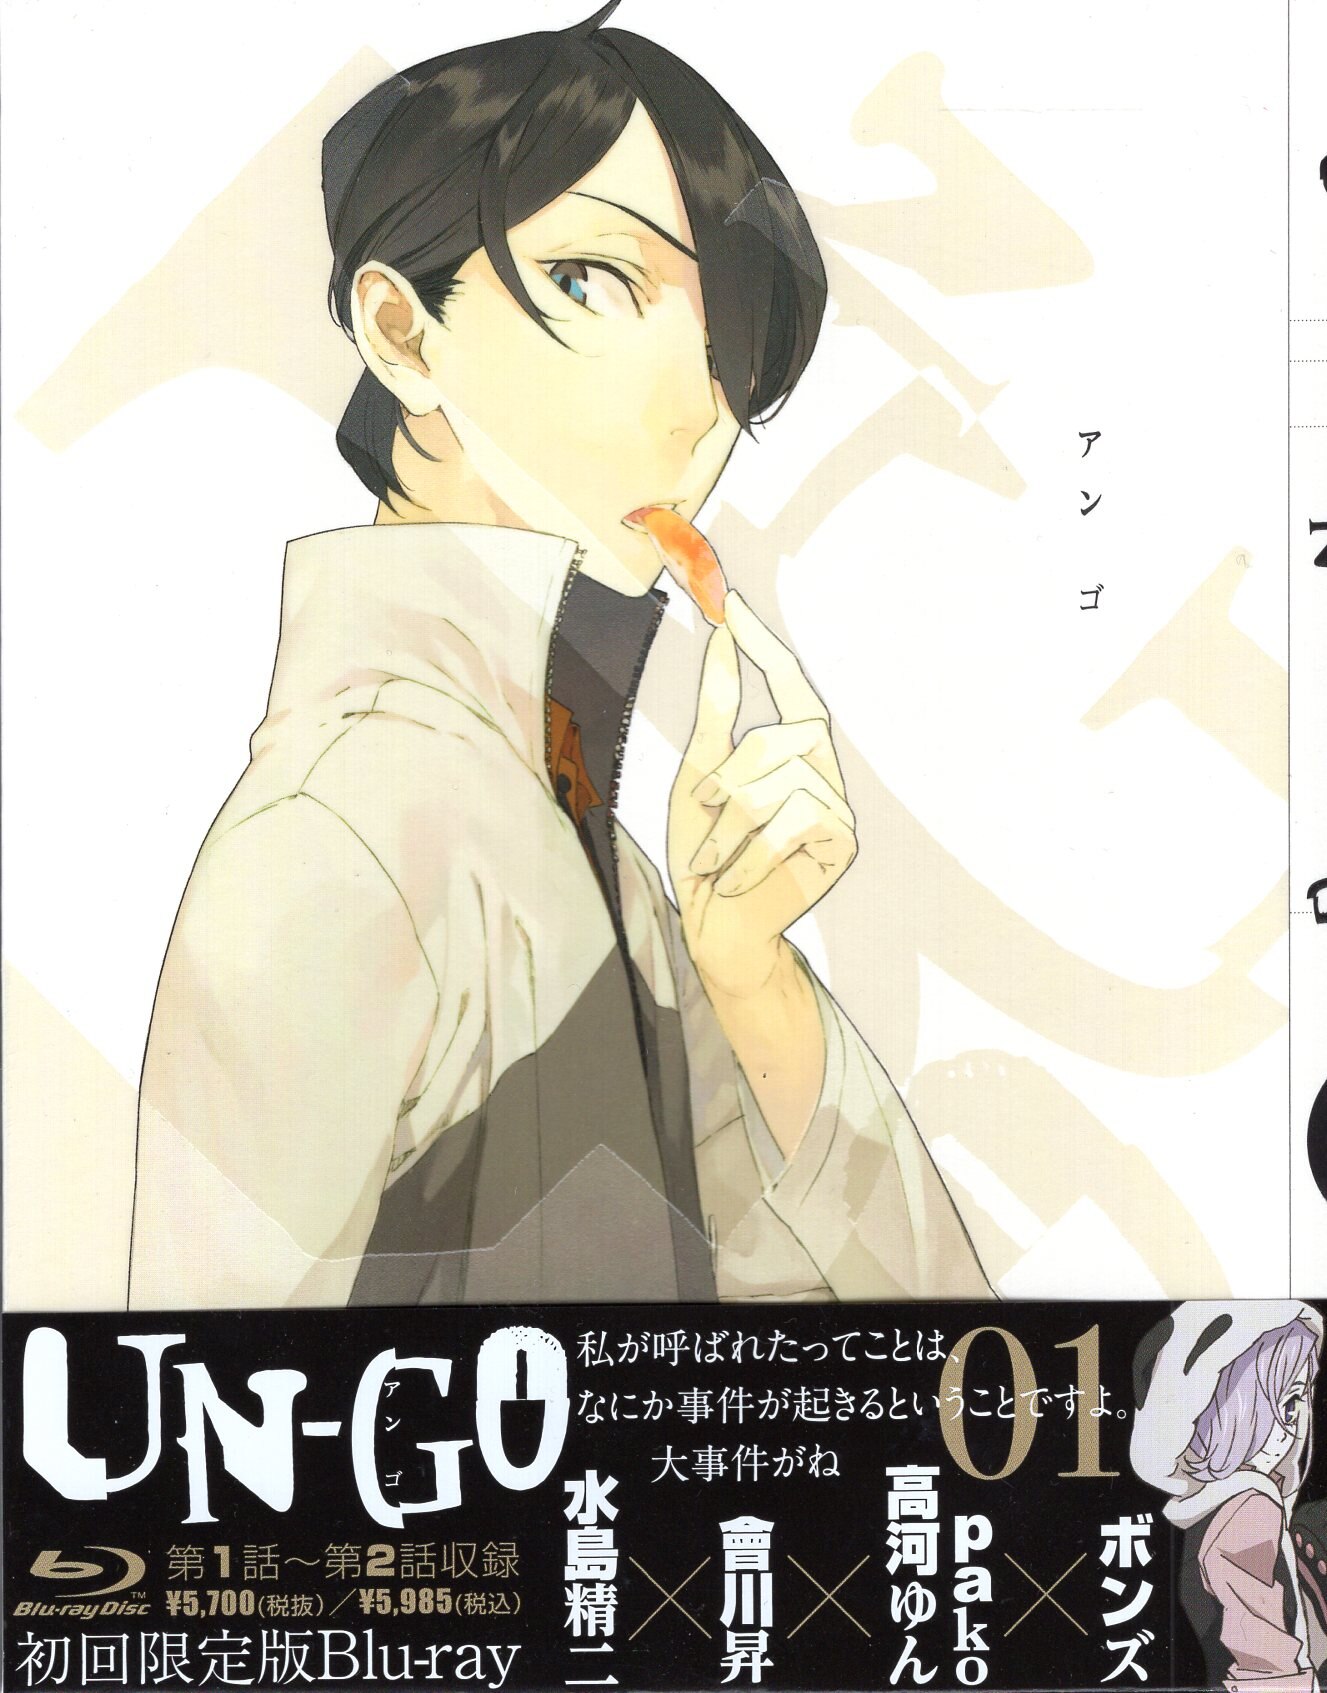 UN-GO 第1巻〜4巻」「因果論」DVD 関連書籍-